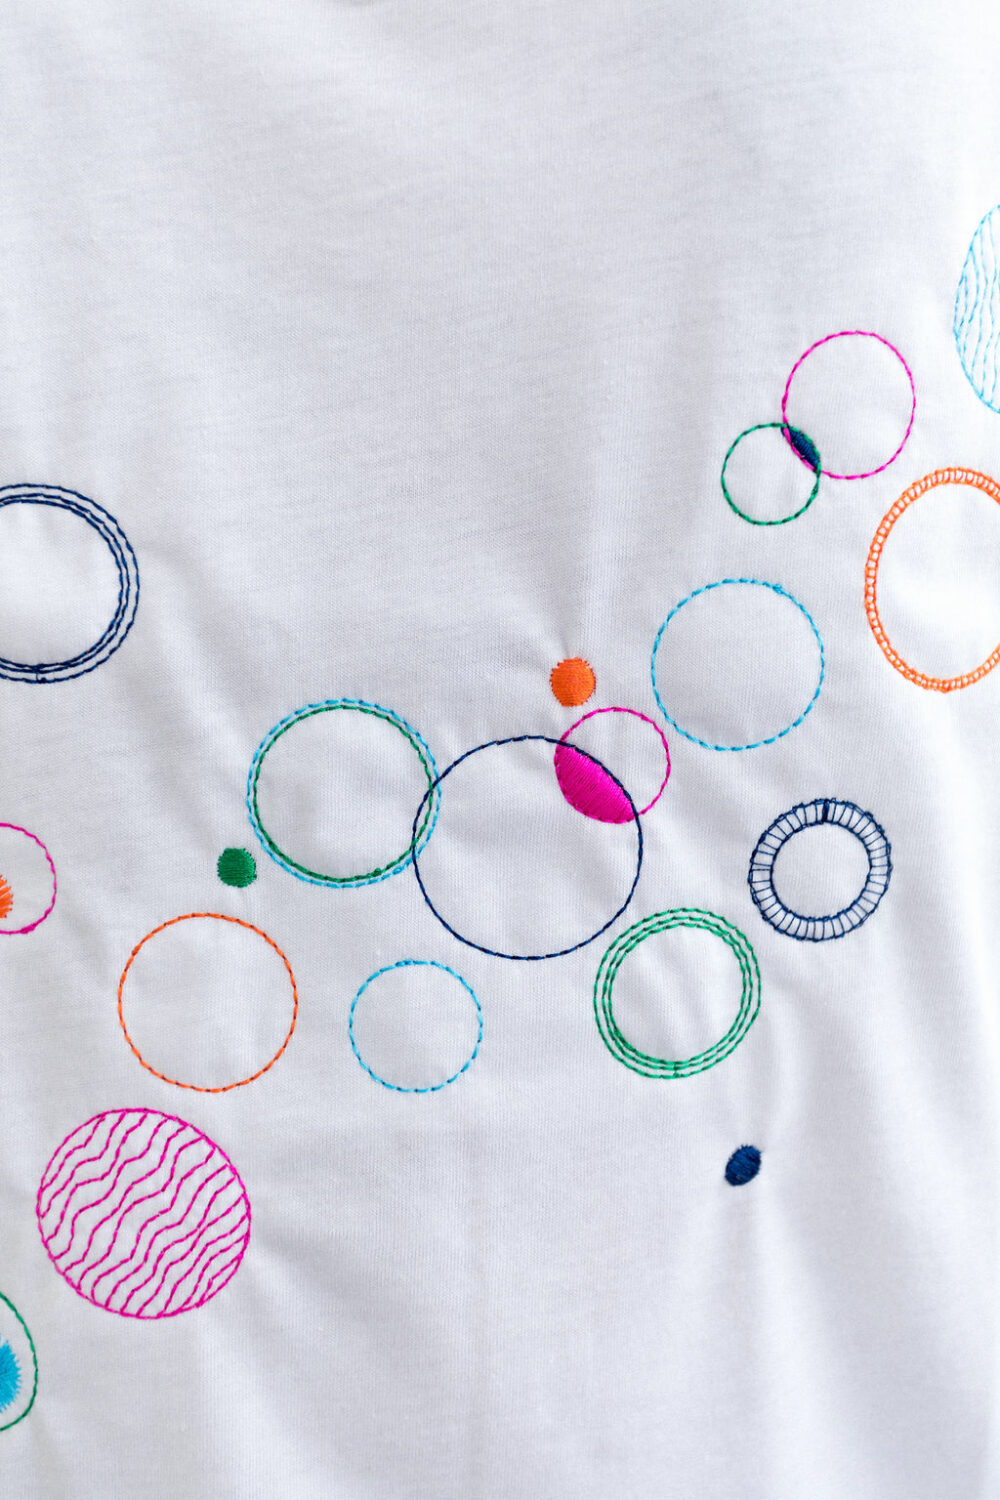 Tee-shirt brodé bulles graphiques 100% coton bio colori blanc